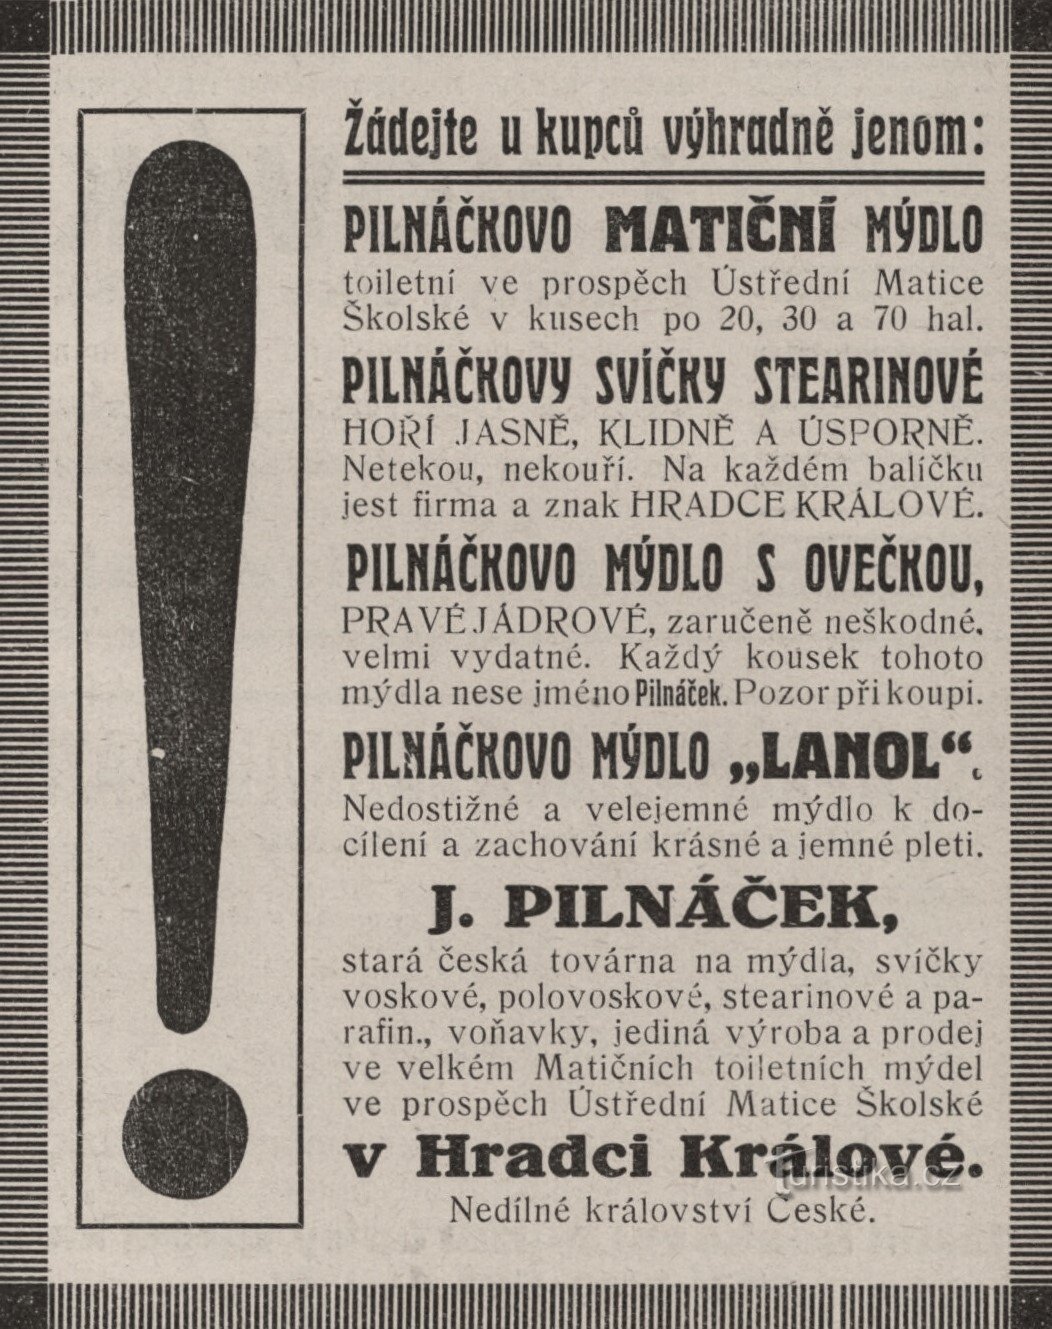 Reklama tvornice Pilnáček iz 1912. godine